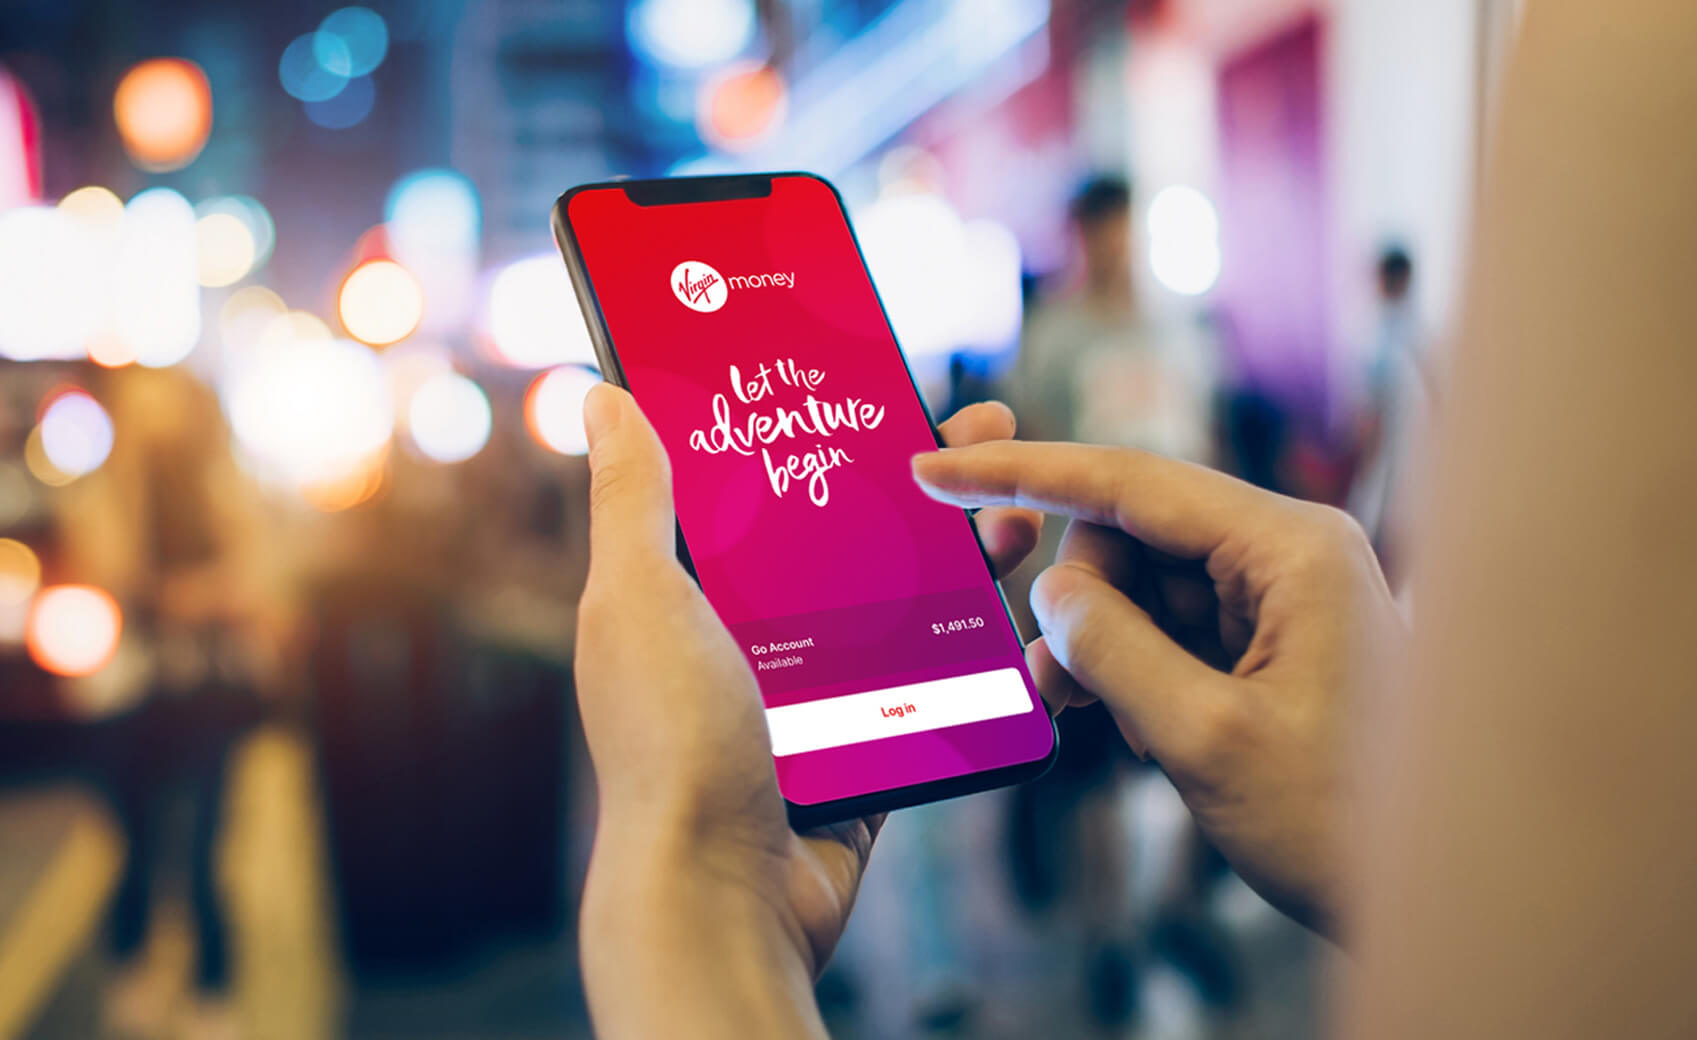 Virgin Money Australia's new mobile banking app